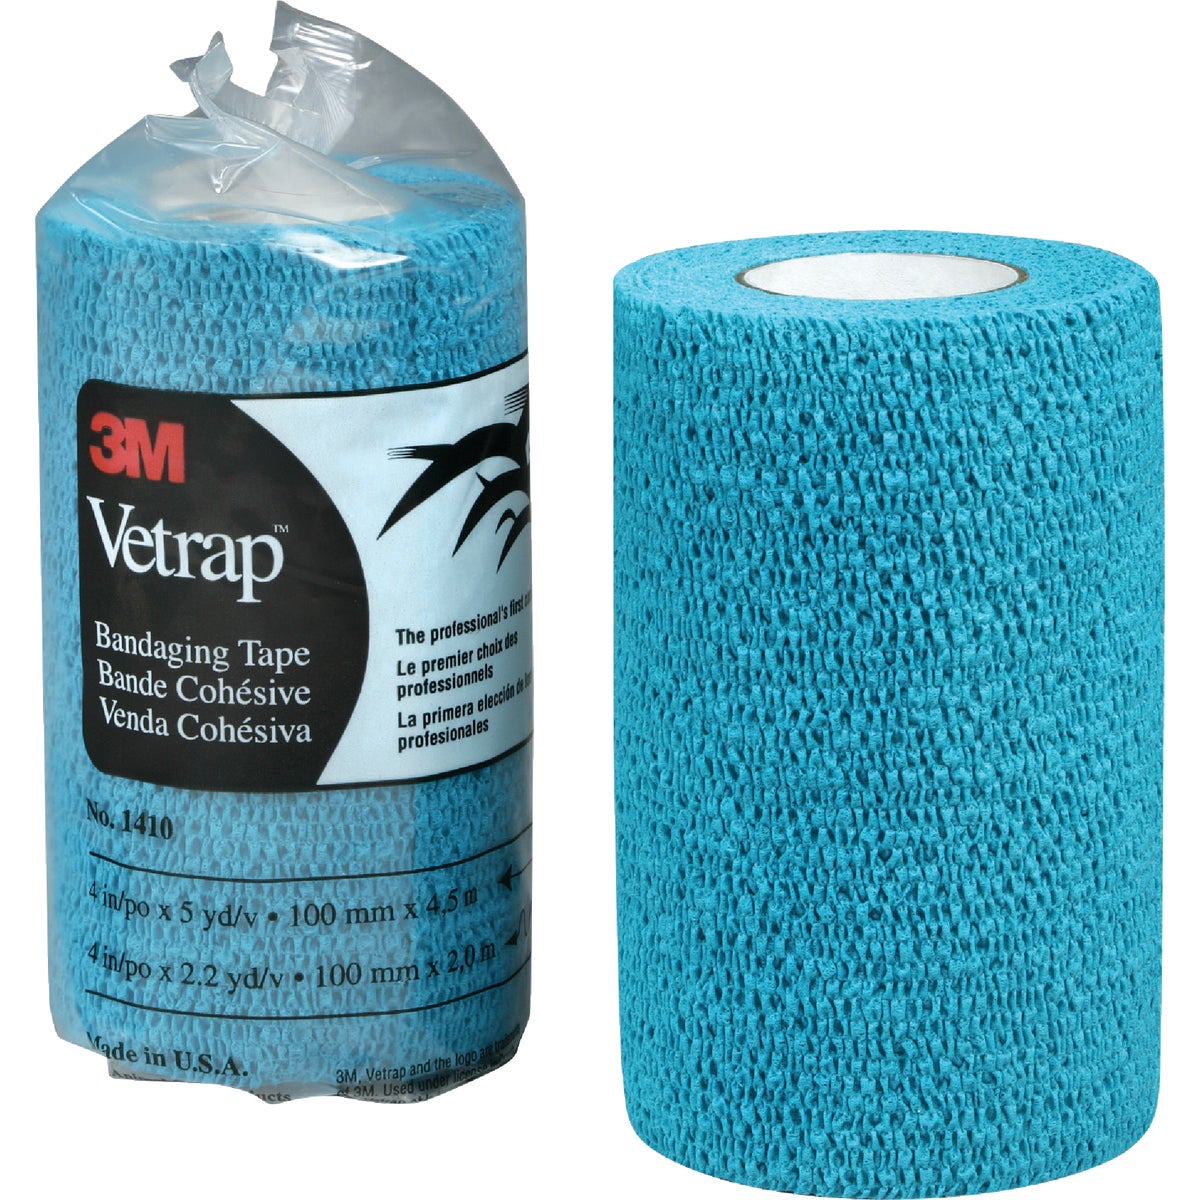 3M Vetrap 4 In. x 5 Yd. Blue Bandaging Wrap